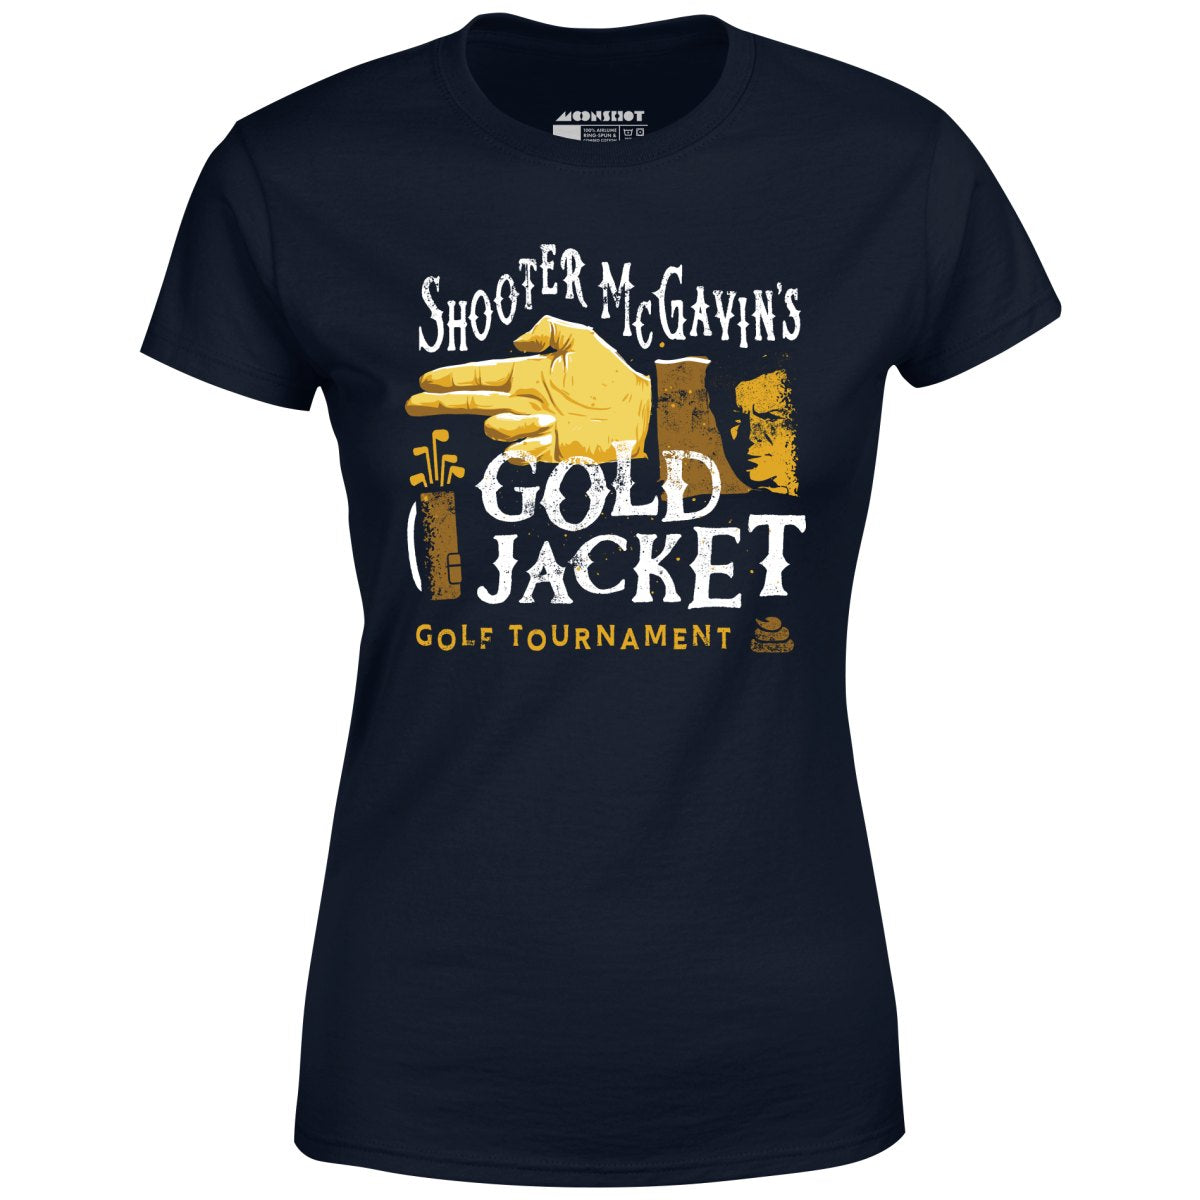 Shooter McGavin's Gold Jacket Golf Tournament - Women's T-Shirt